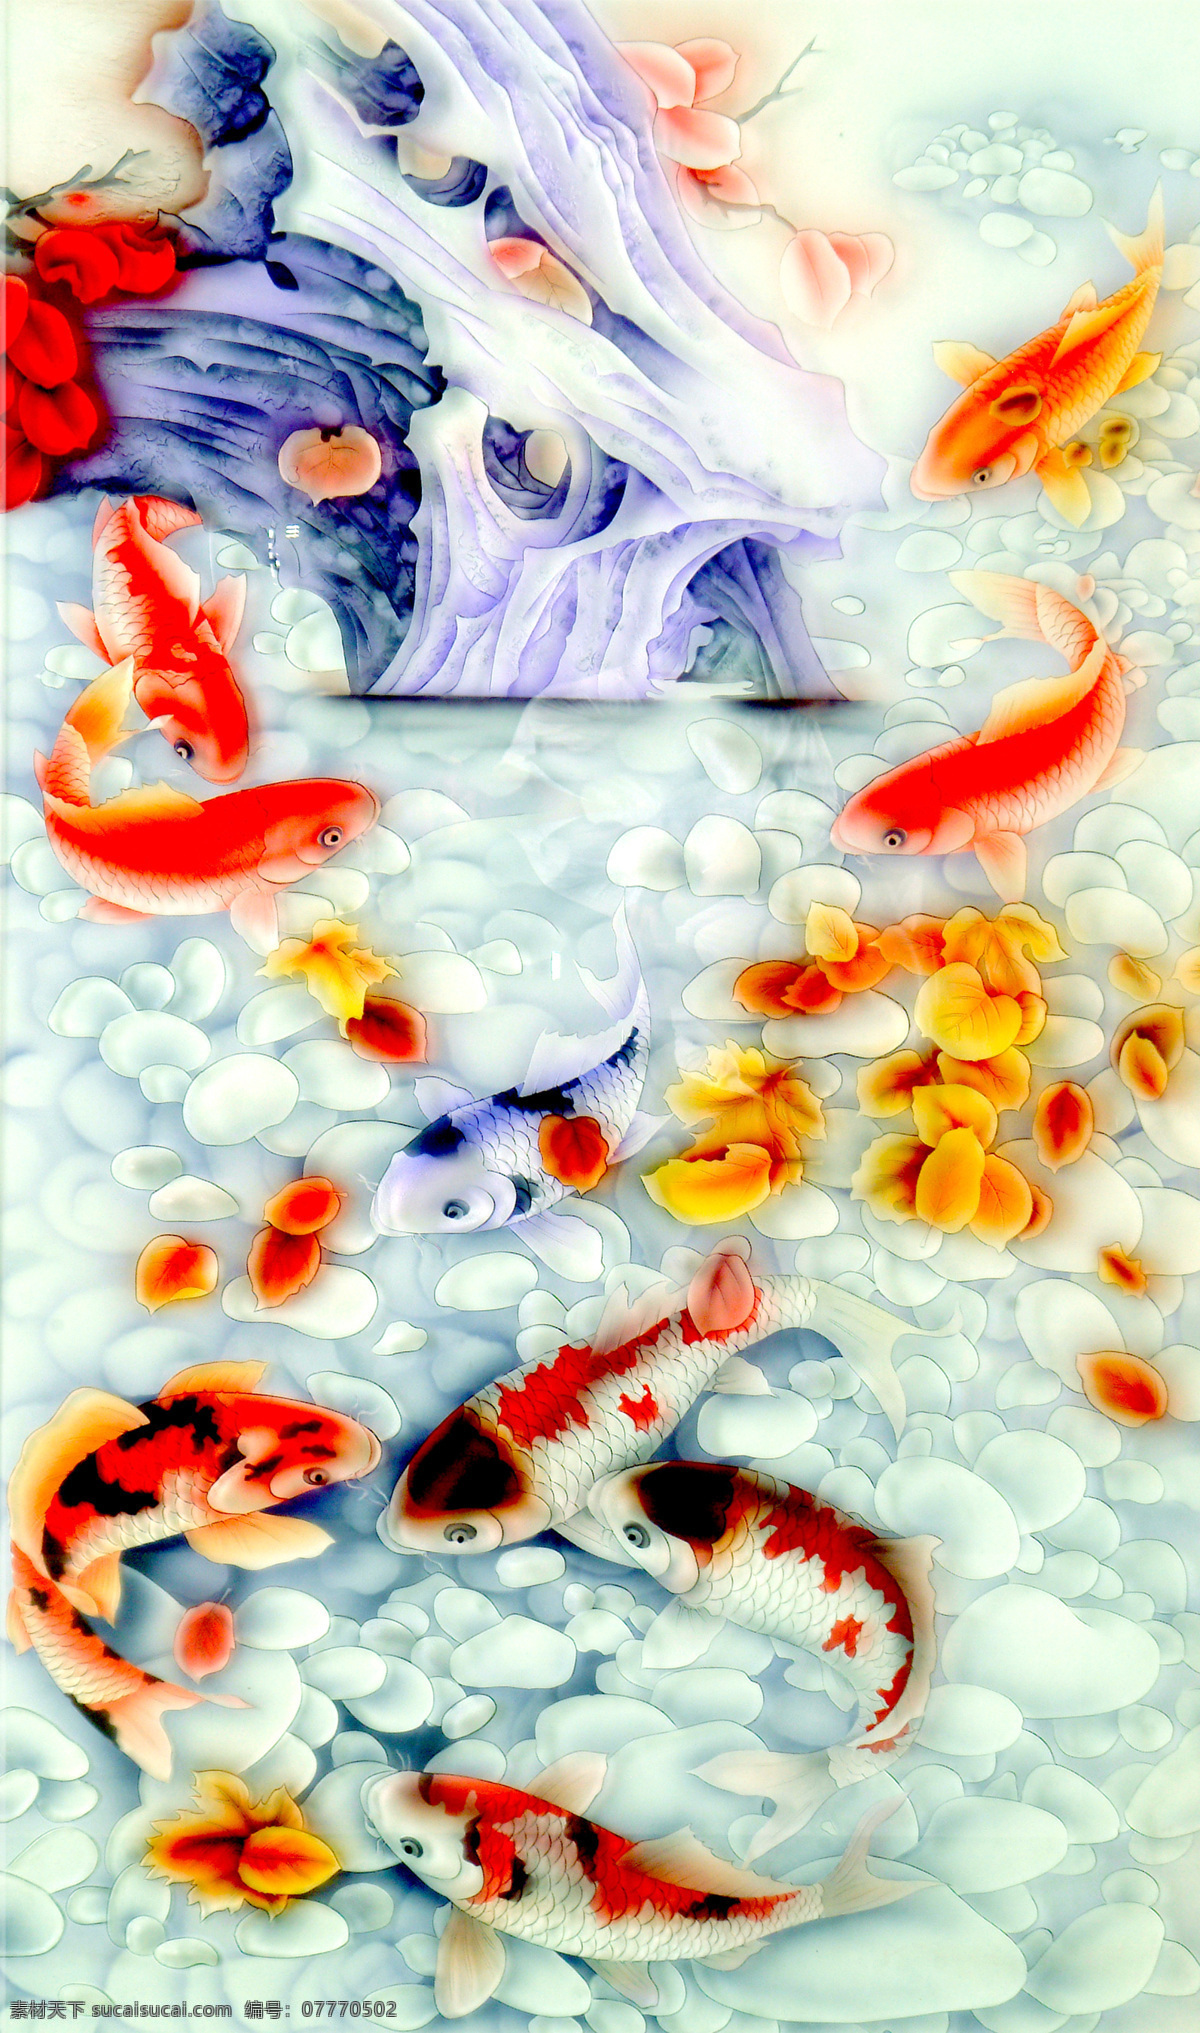 鱼 鲤鱼 鱼群 树叶 石子 壁画 绘画 艺术 效果图 绘画书法 文化艺术